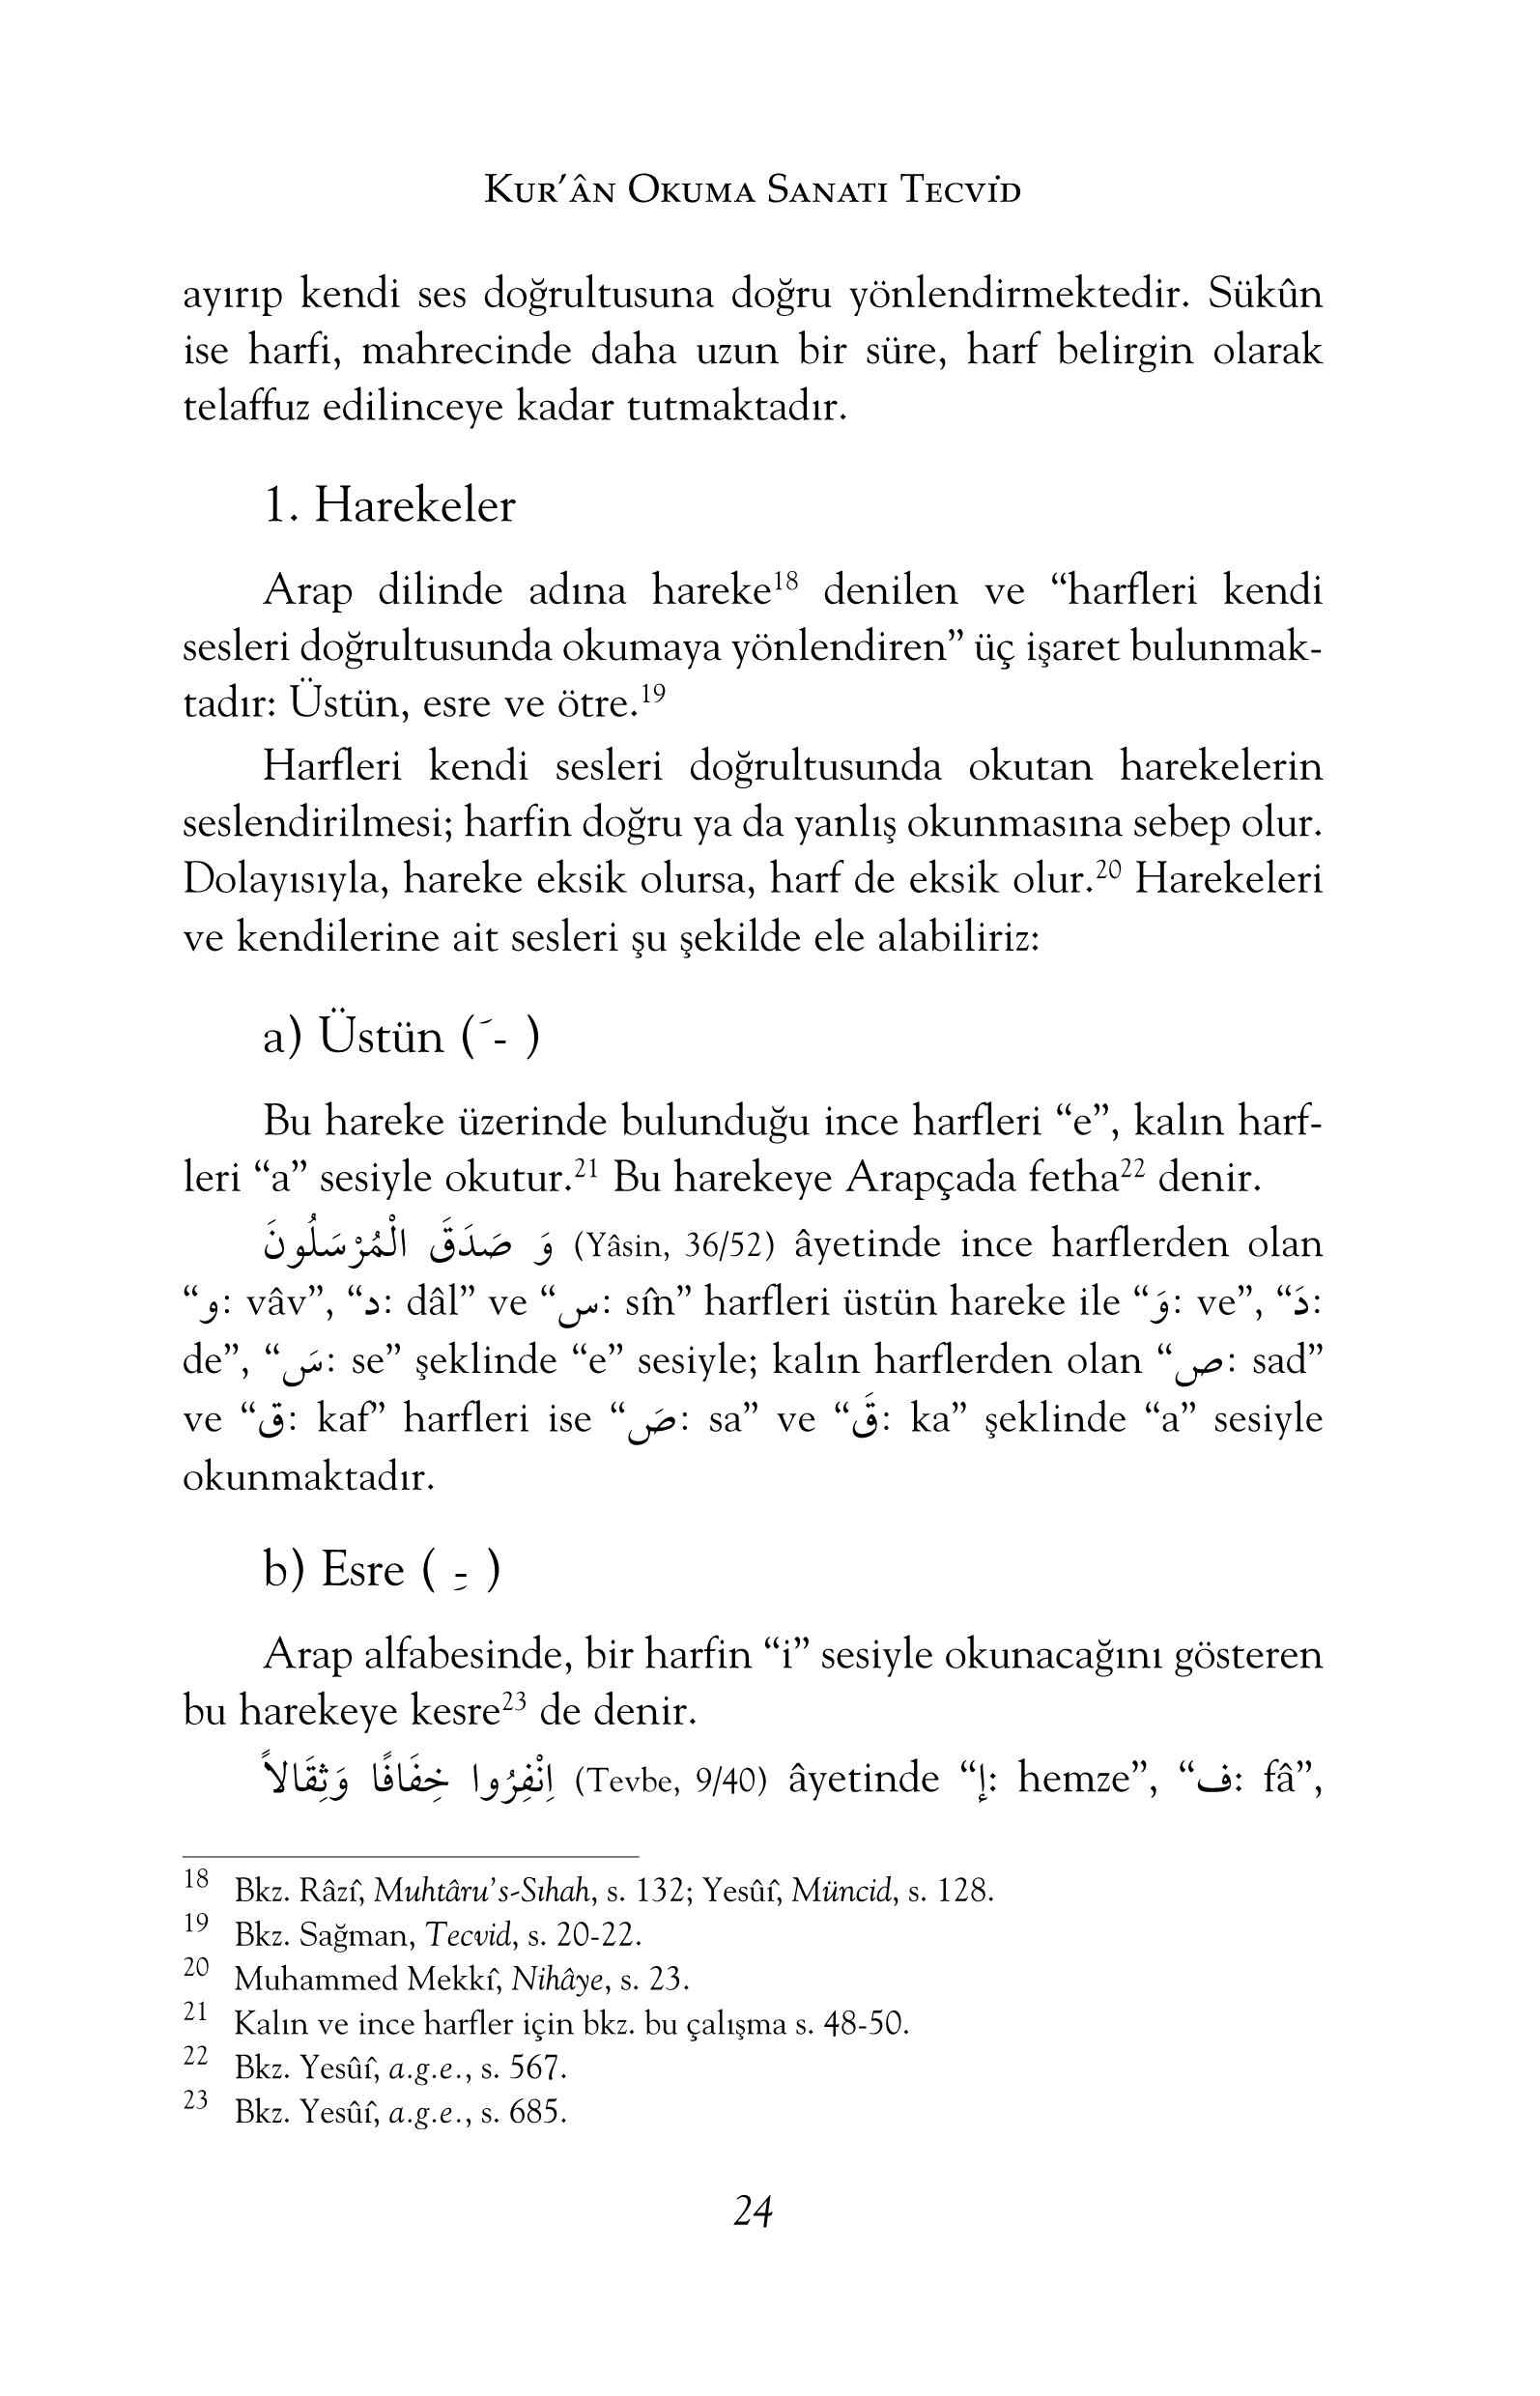 Alican Dagdeviren - Kuran Okuma Sanati - Tecvid - IsikAkademiY.pdf, 193-Sayfa 